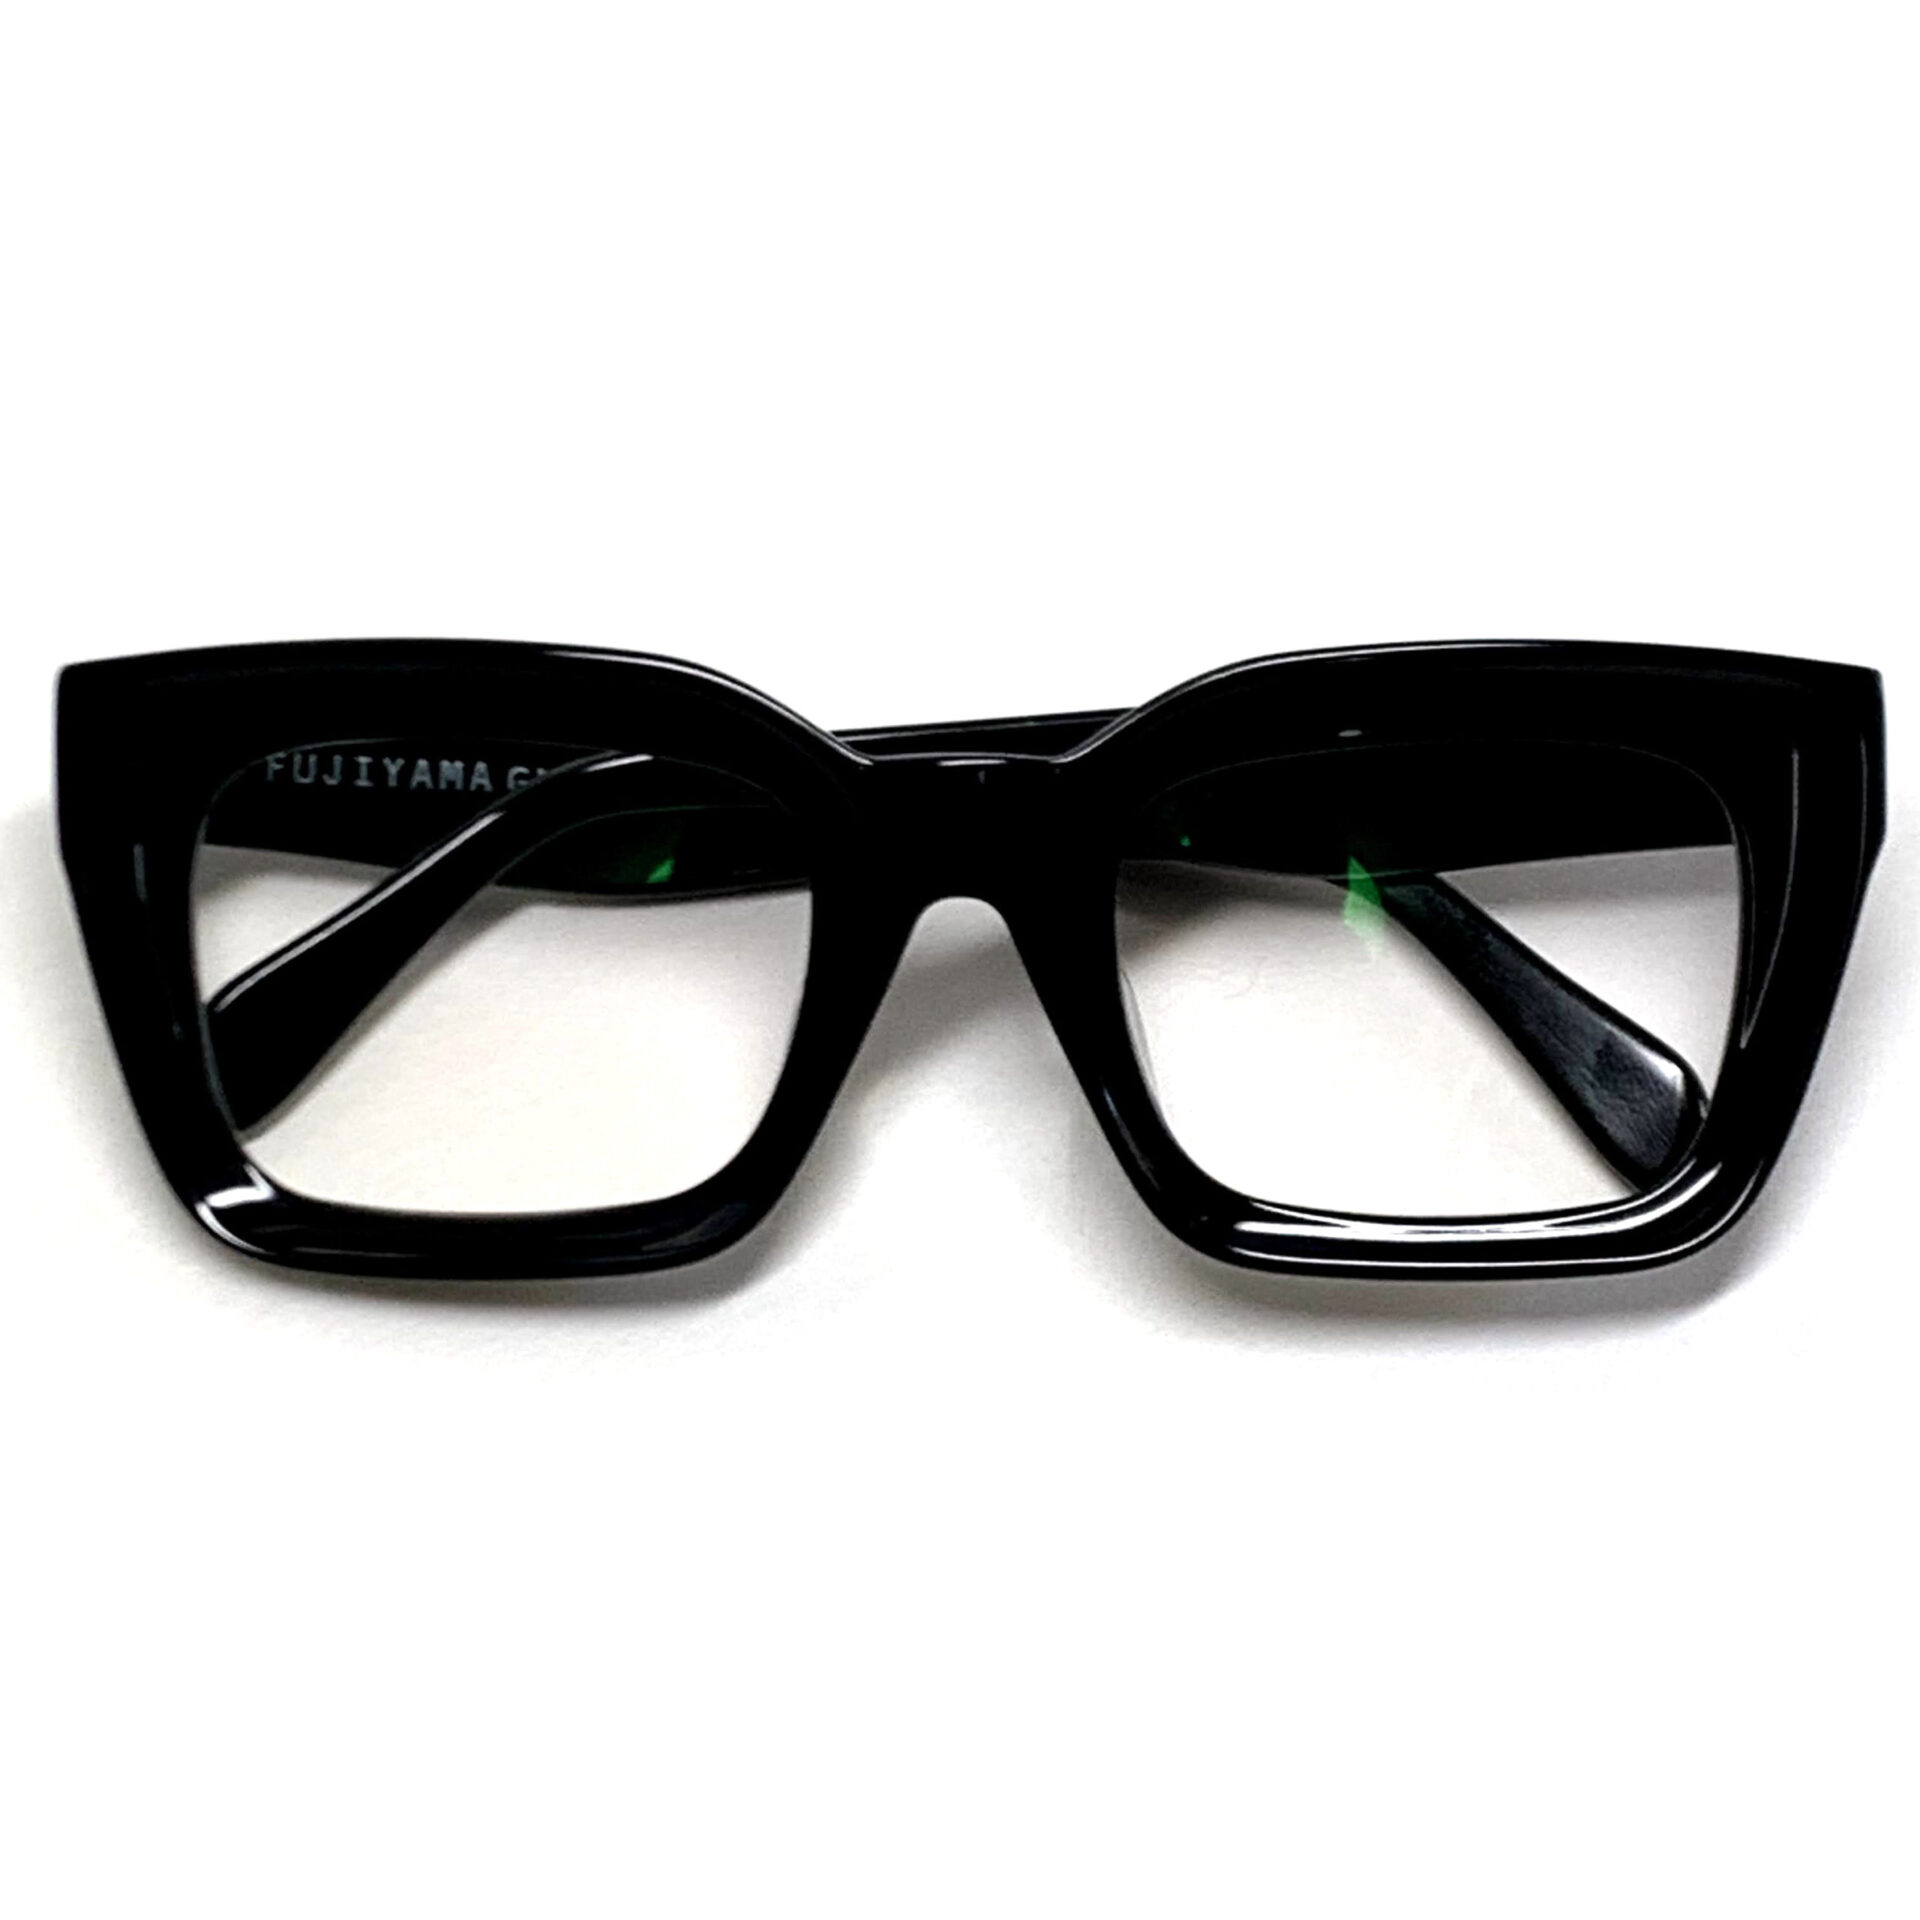 きれい 富士山眼鏡 オリジナル ゴース GHOSE 太セル 黒縁 スリムシェイプ BL 通販